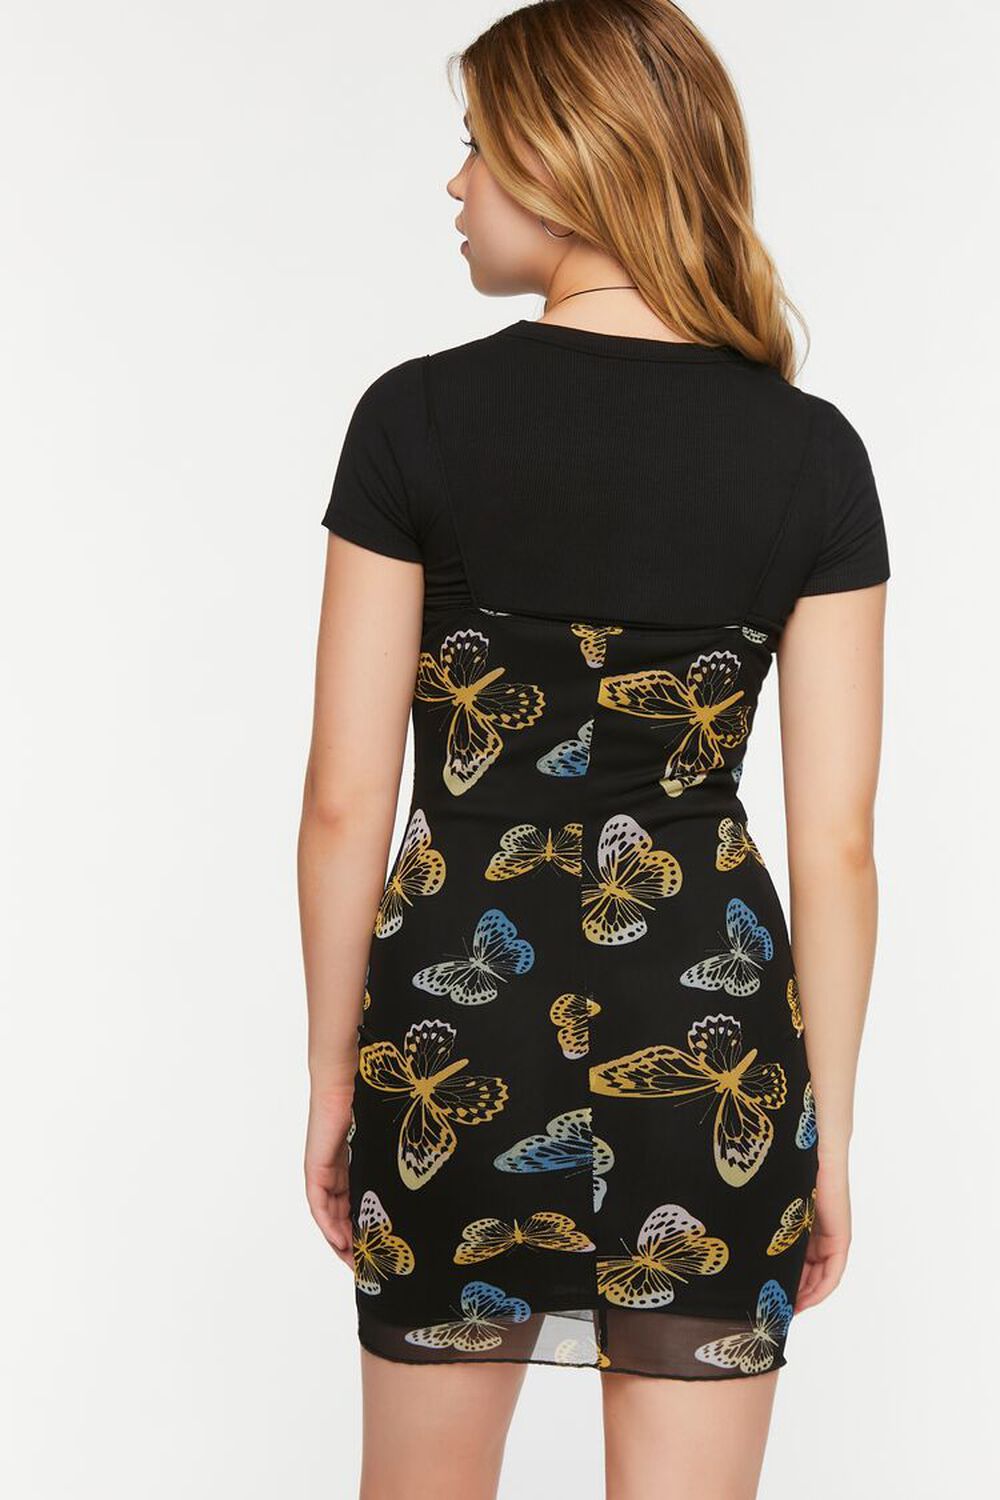 BLACK/MULTI Mesh Butterfly Print Cami Mini Dress, image 3